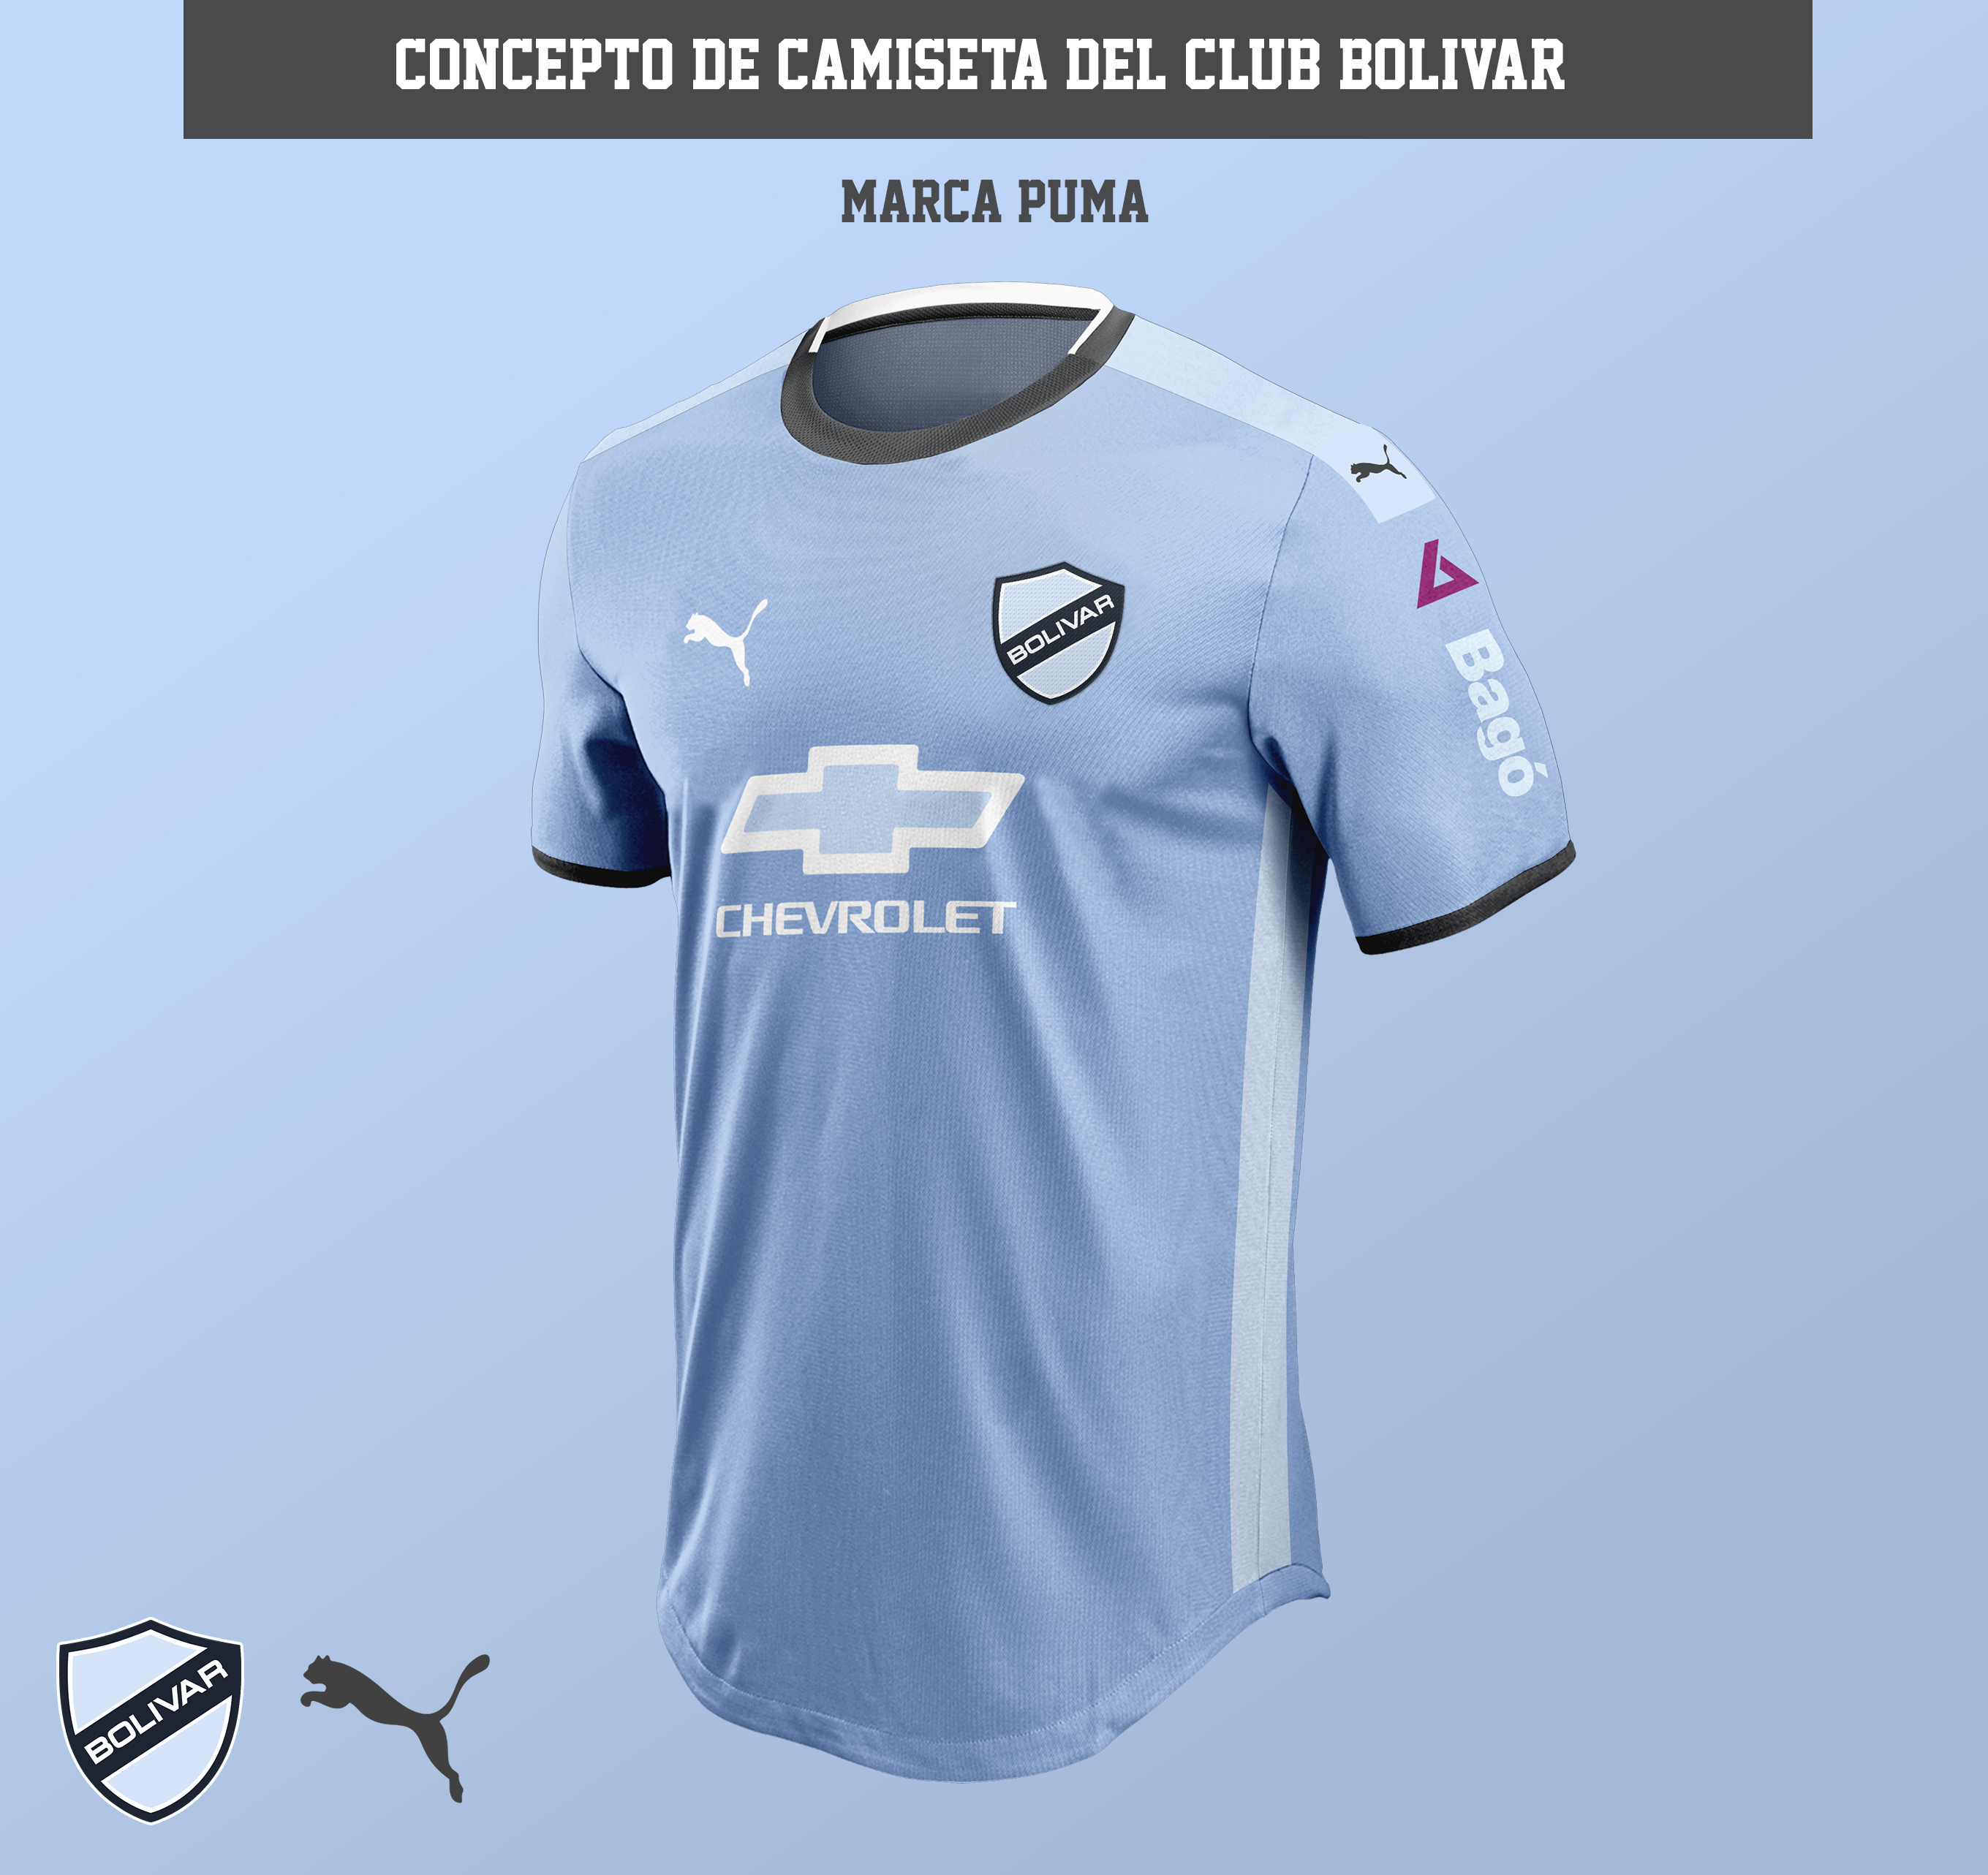 Concepto camiseta Club Bolívar - Puma